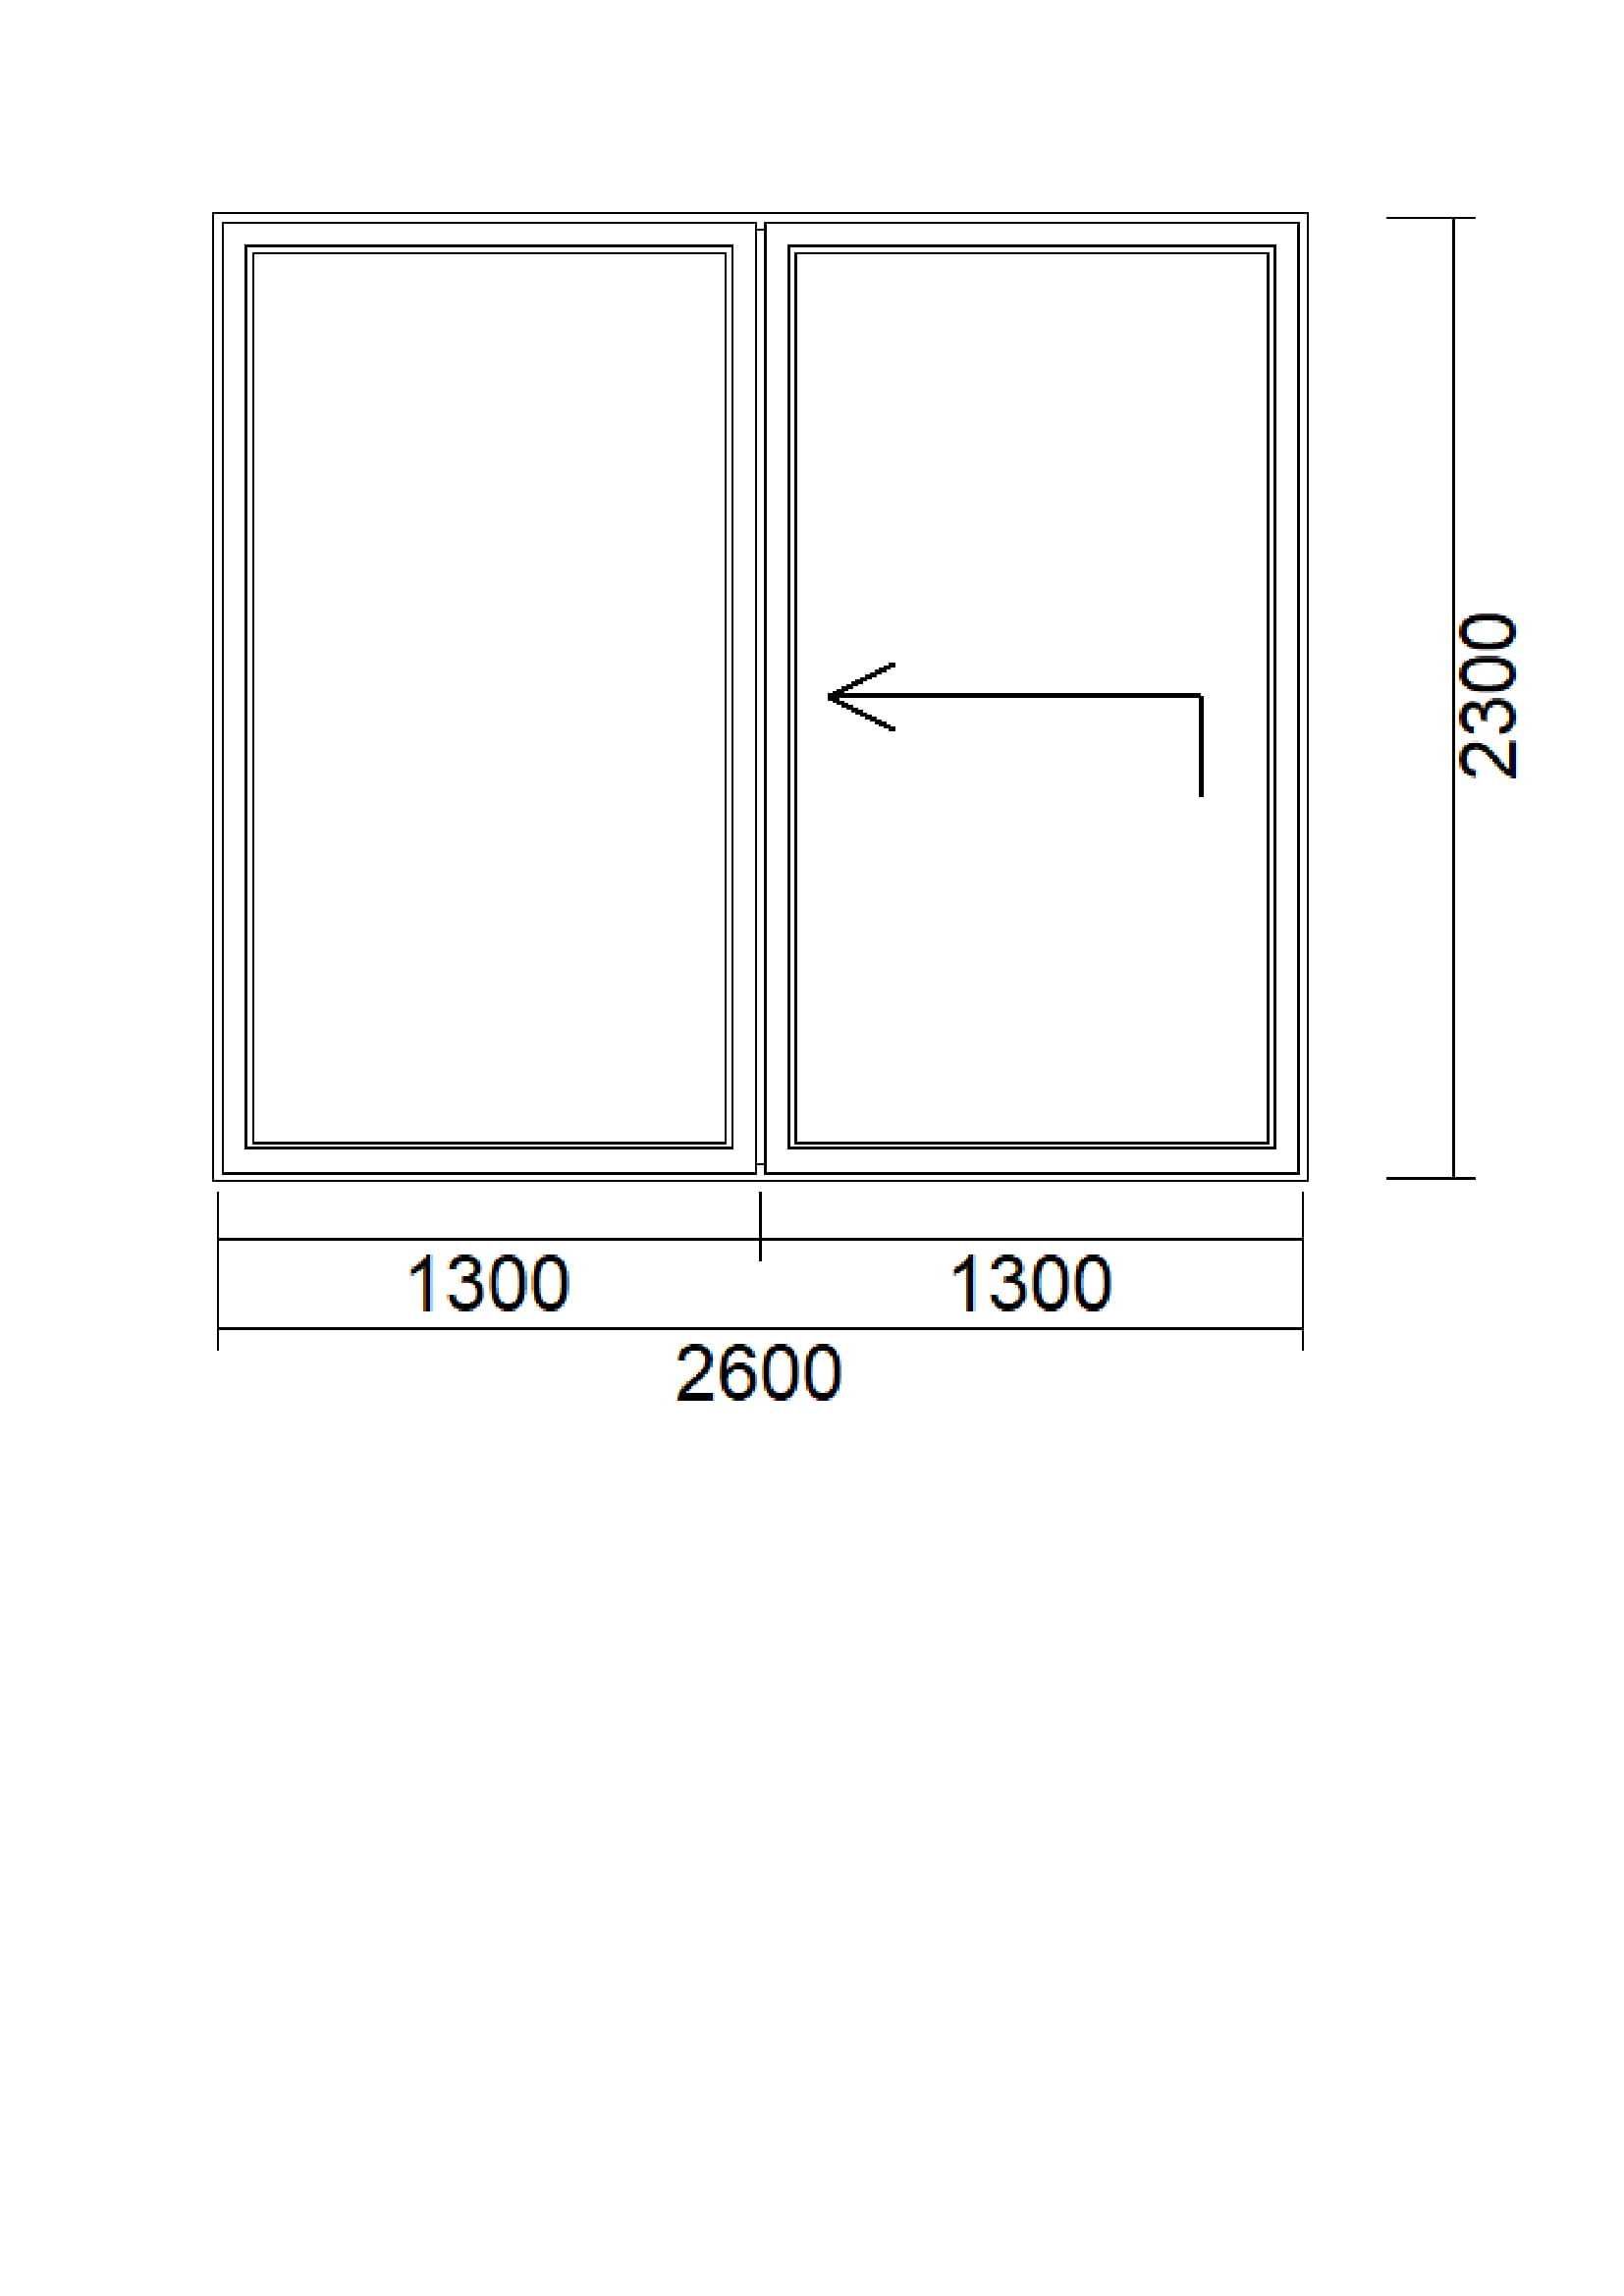 Drzwi tarasowe HS firmy DRUTEX 2600x2300 dostępne od zaraz OKAZJA